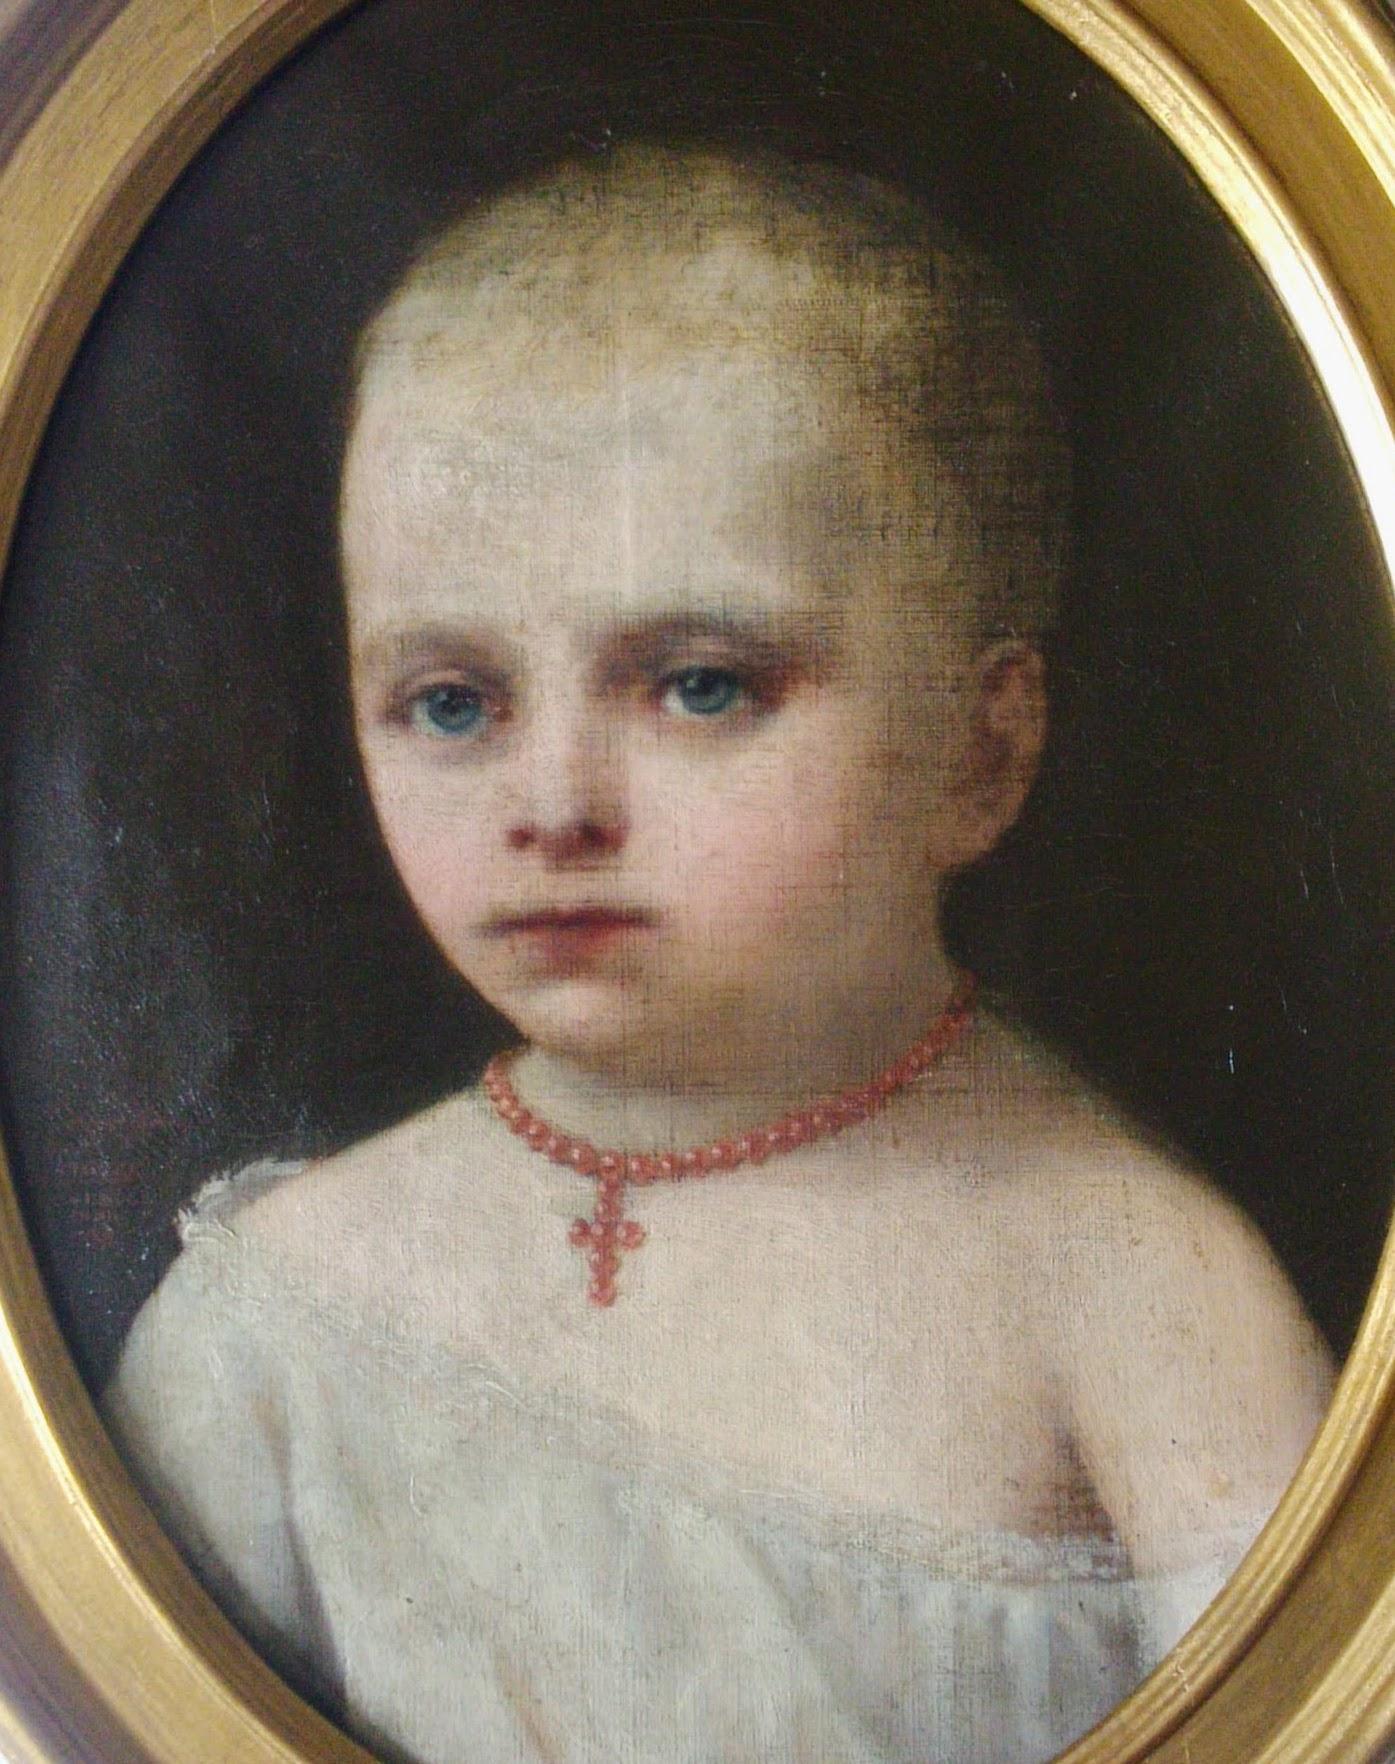 baby napoleon